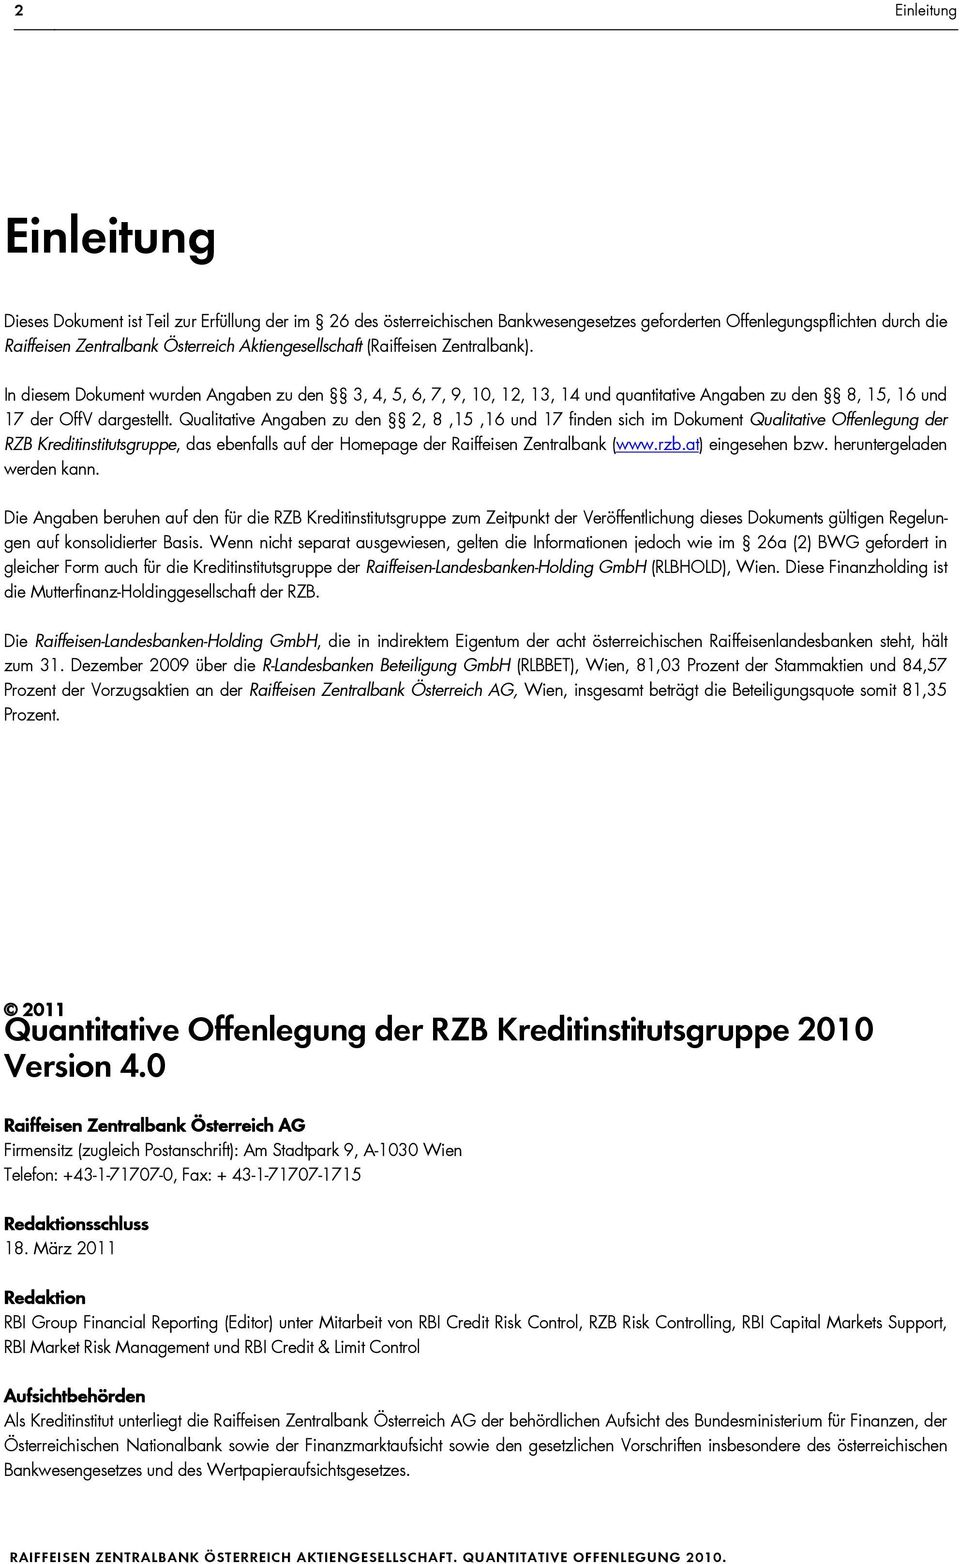 Qualitative Angaben zu den 2, 8,15,16 und 17 finden sich im Dokument Qualitative Offenlegung der RZB Kreditinstitutsgruppe, das ebenfalls auf der Homepage der Raiffeisen Zentralbank (www.rzb.